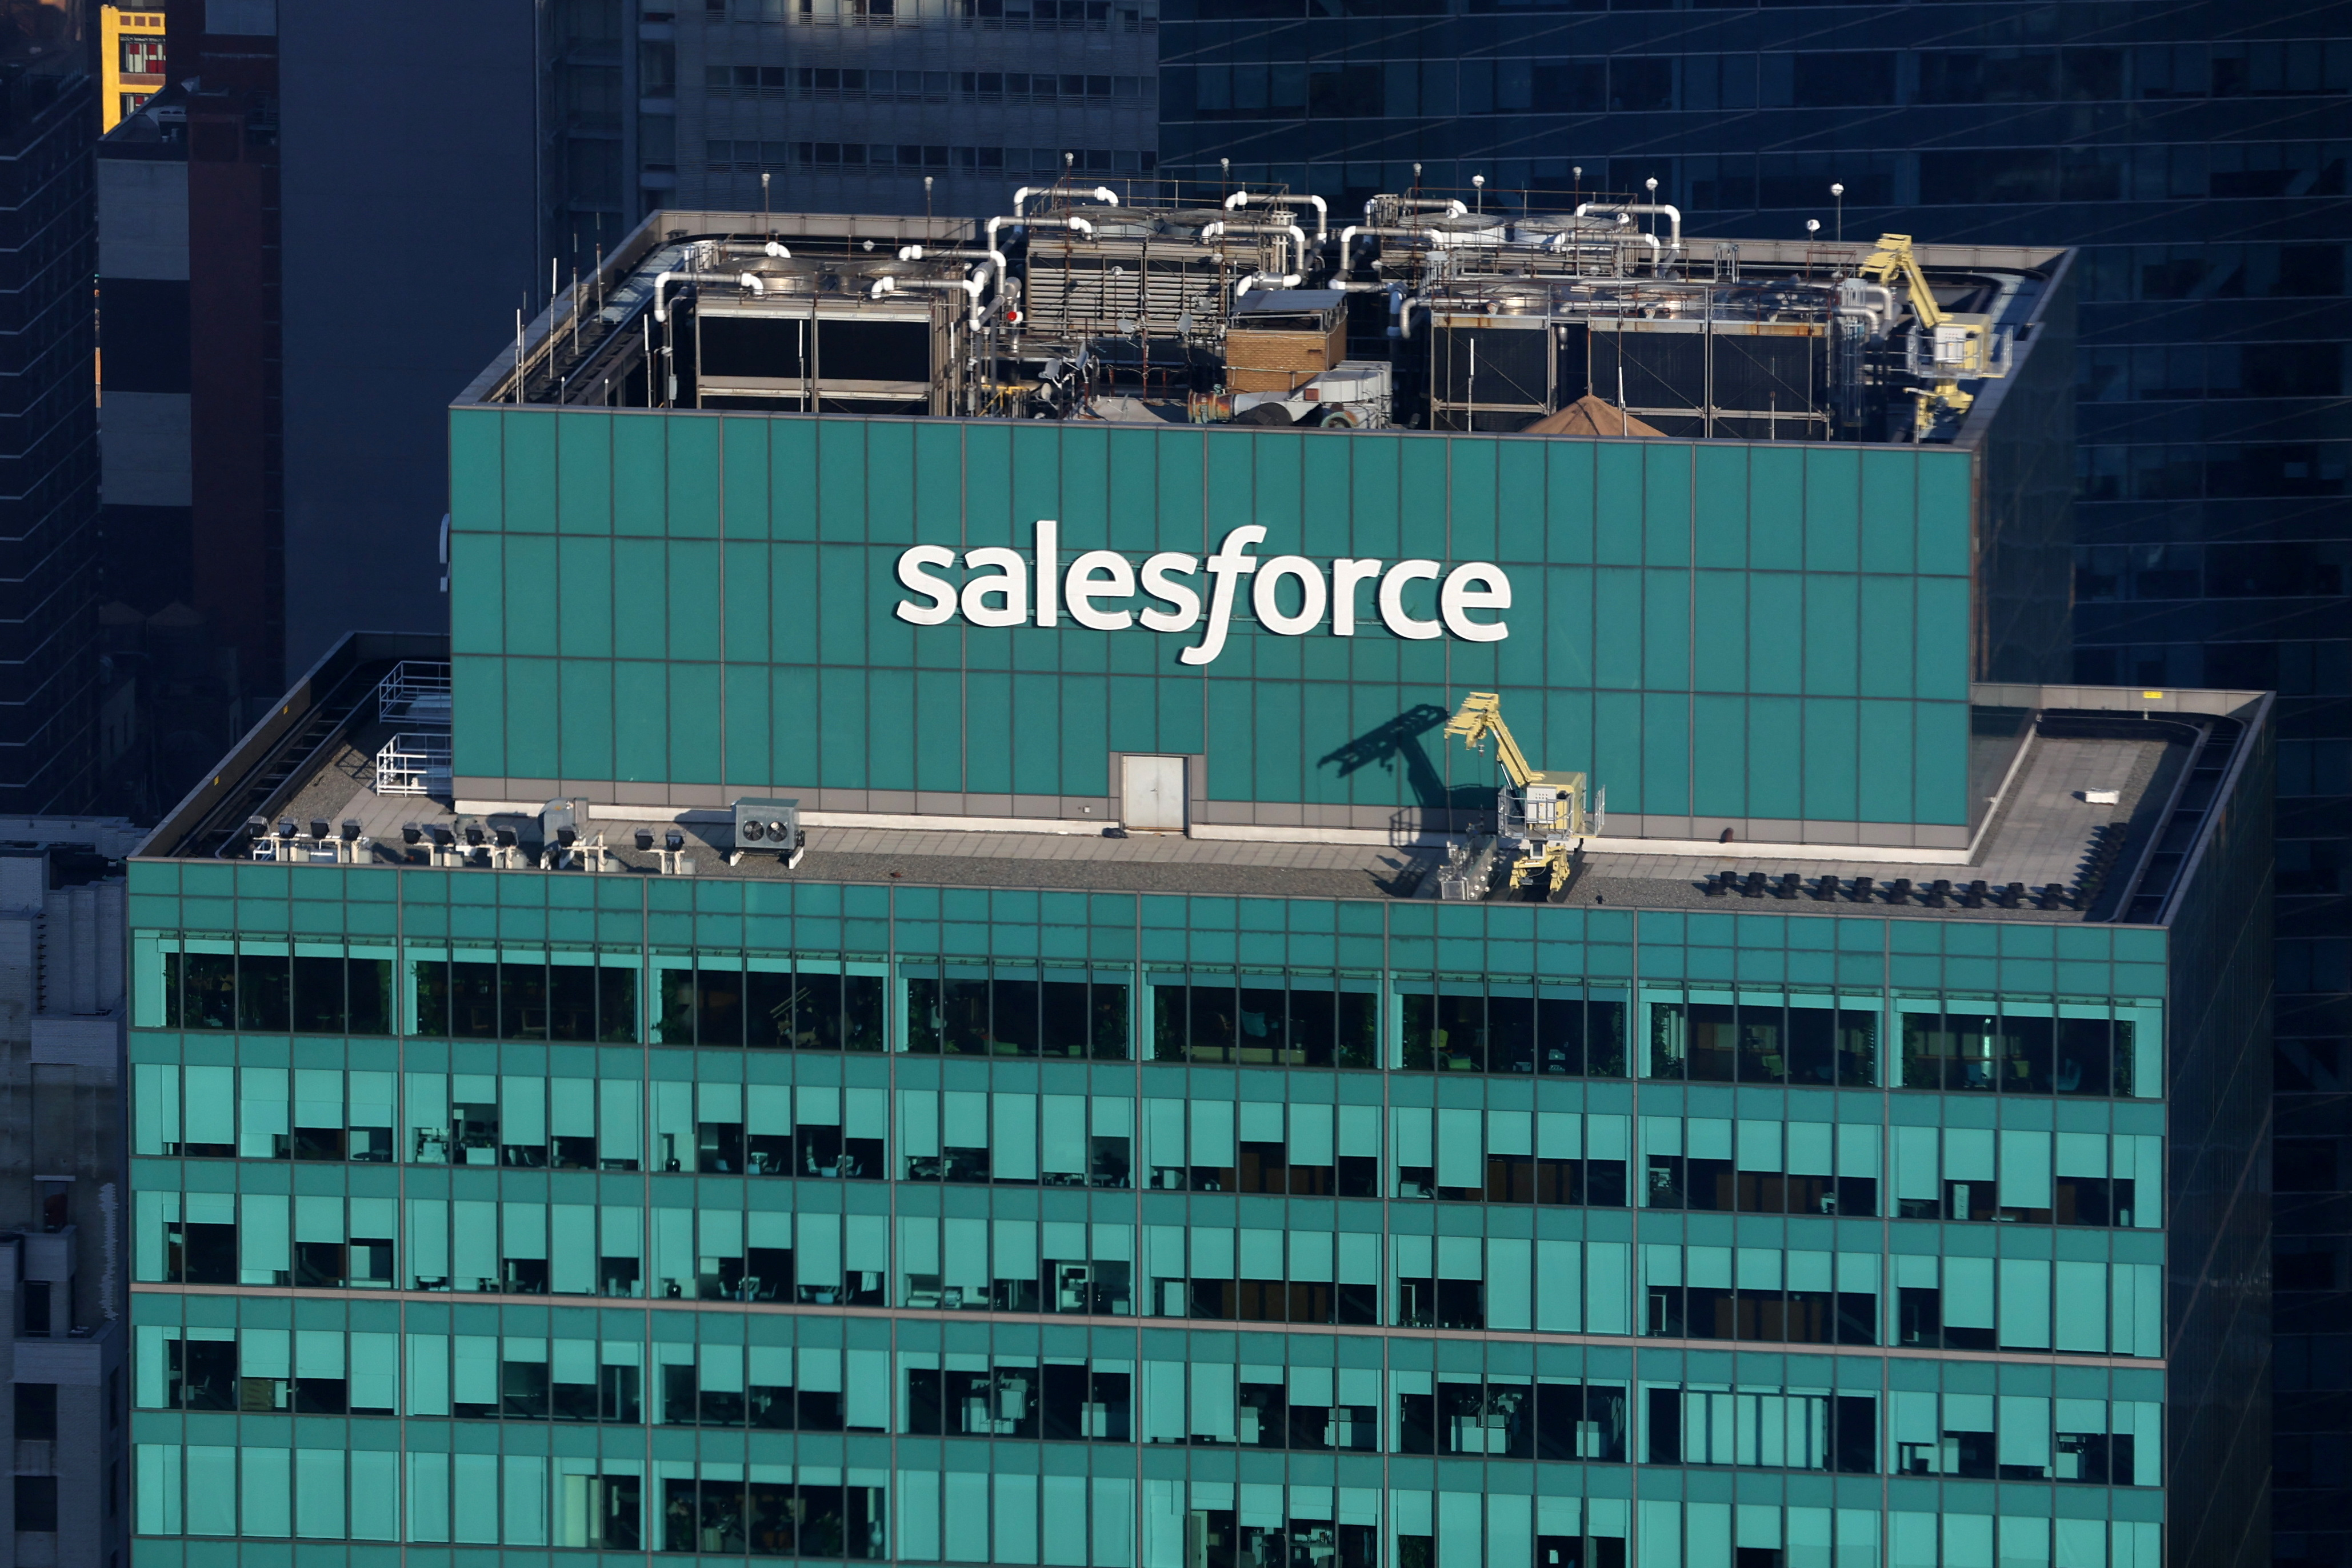 Salesforce building in Manhattan in New York City